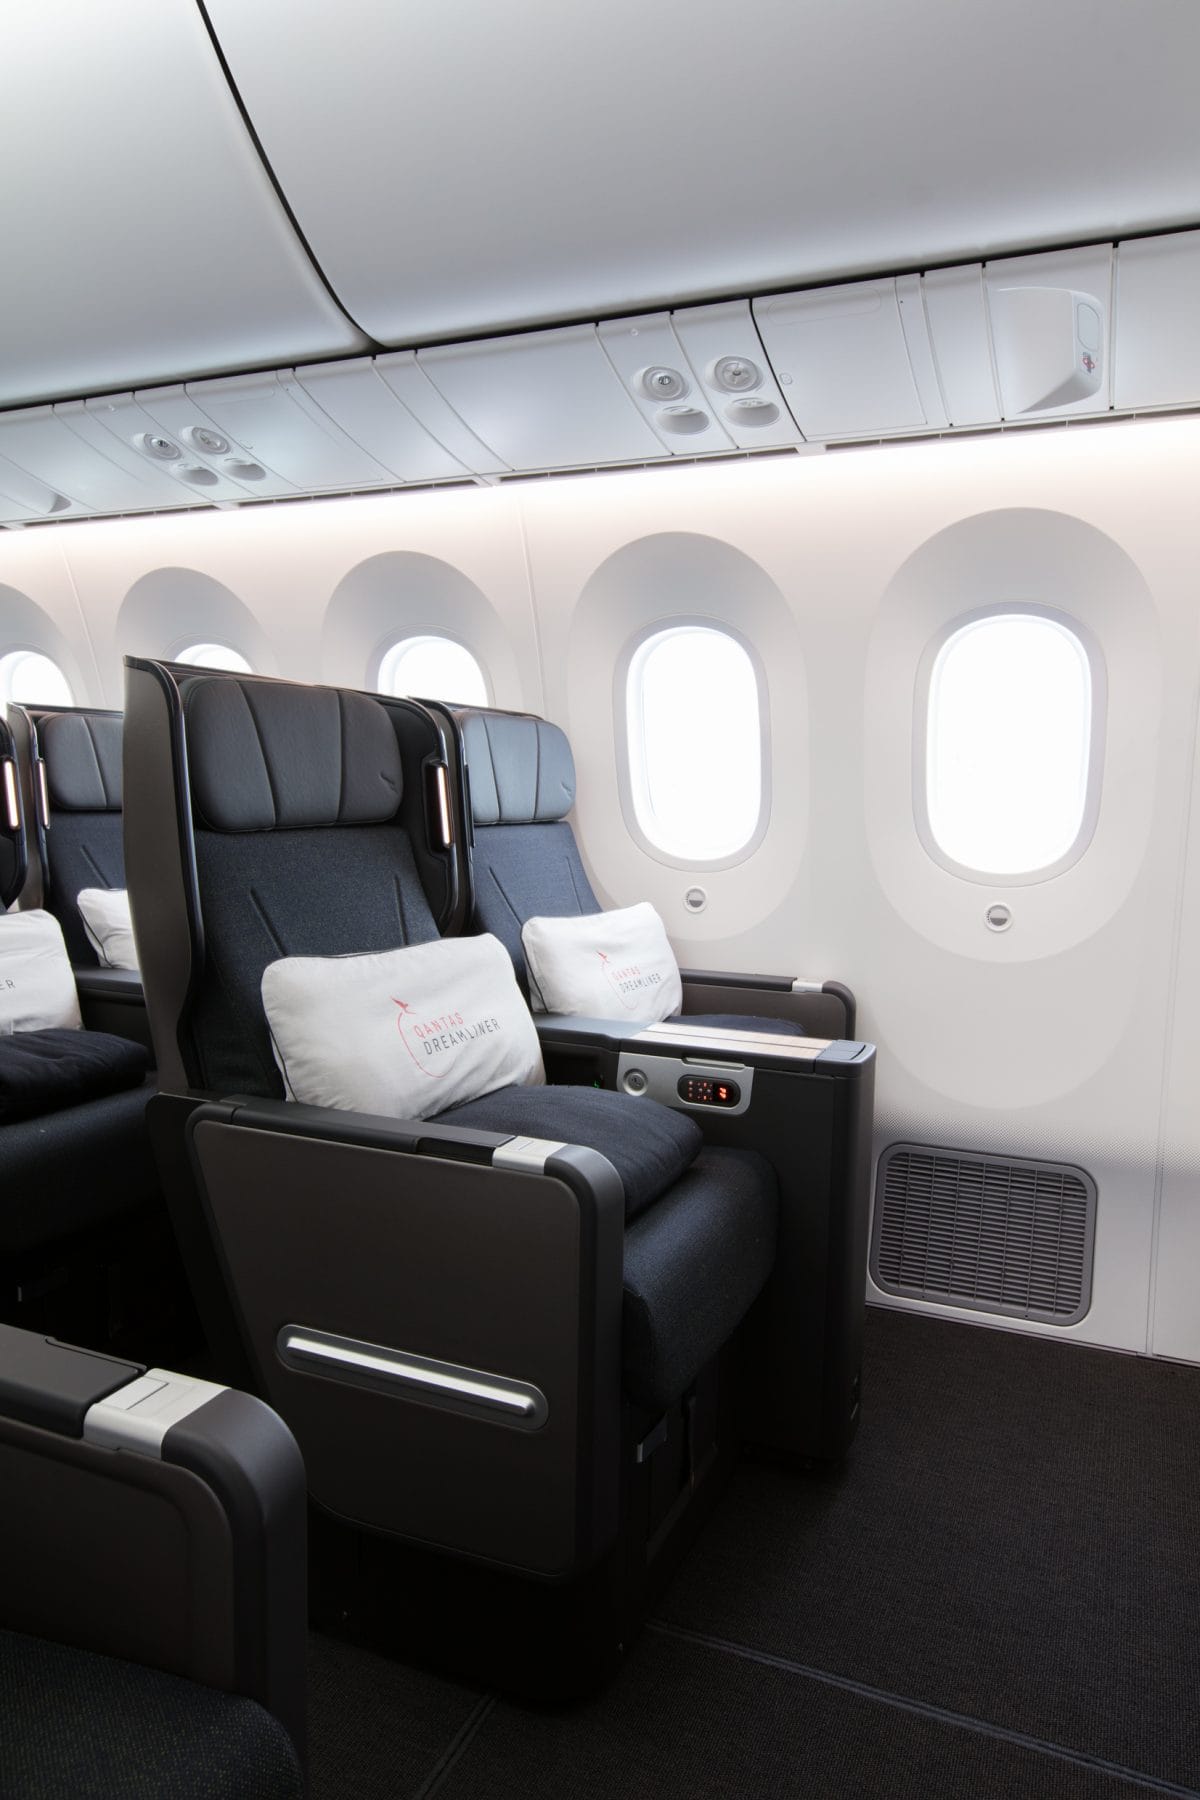 qantas dreamliner 787 premium economy seat